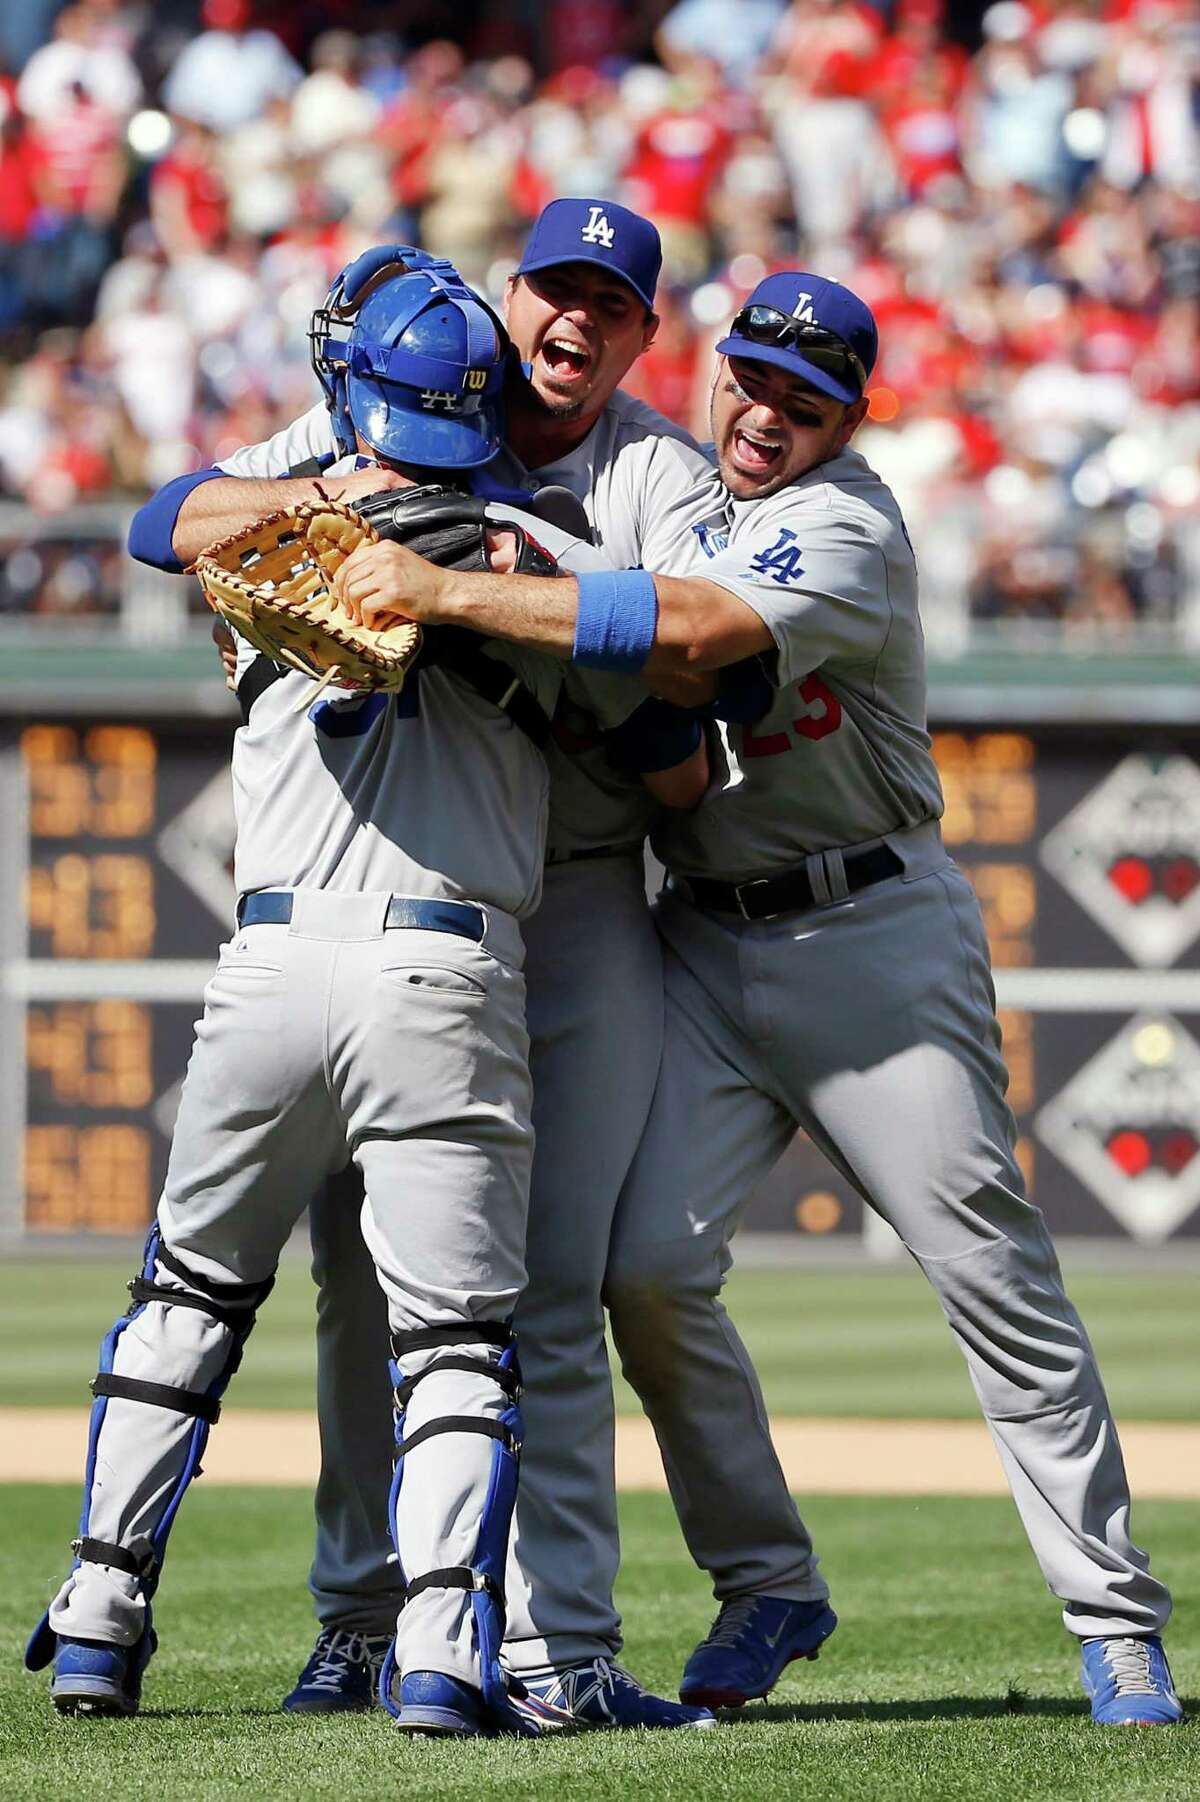 Dodgers' Beckett pitches no-hitter